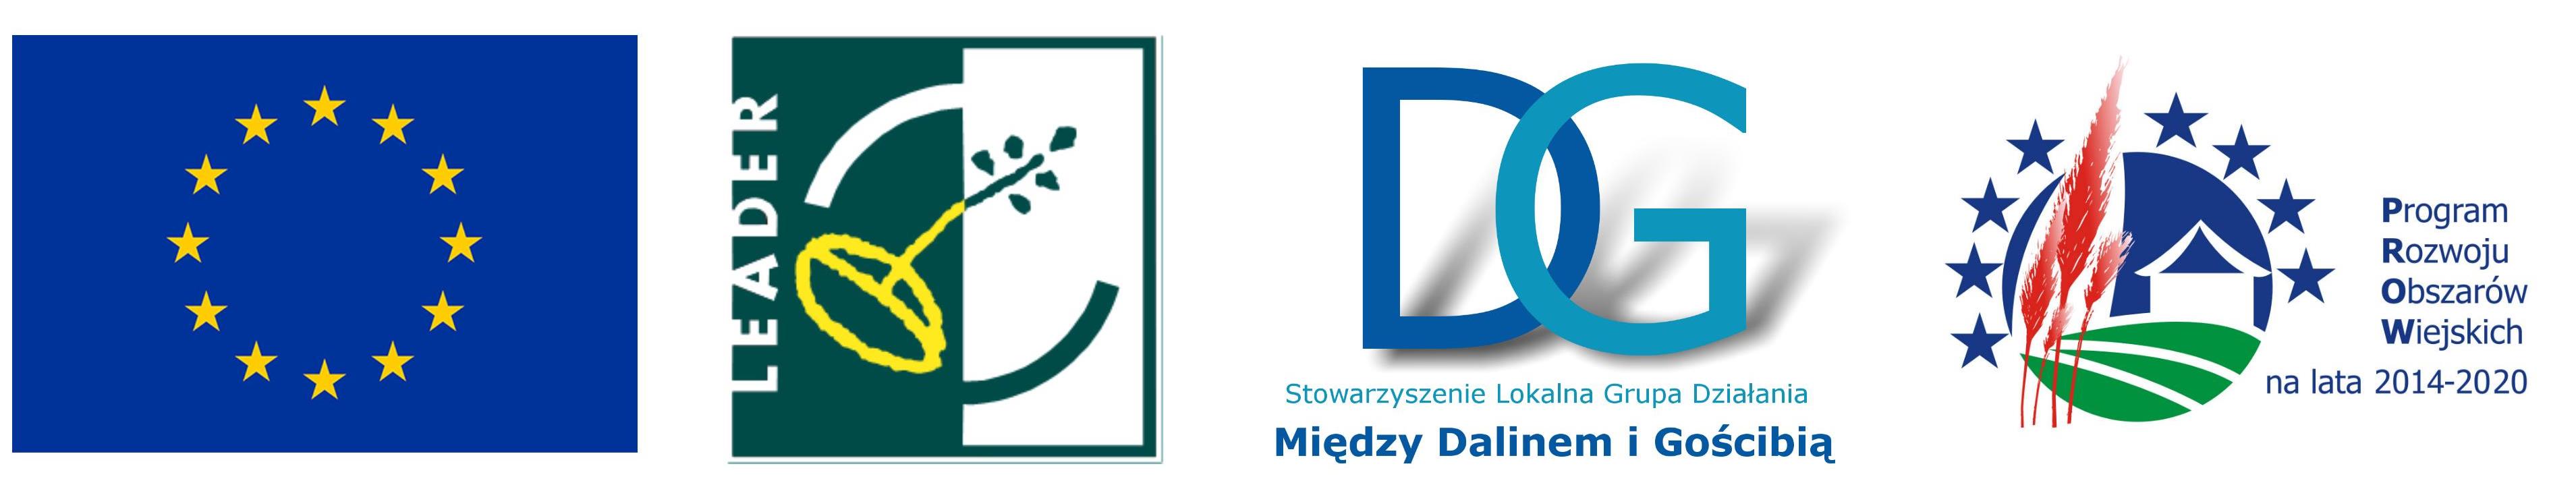 Raport ze spotkania konsultacyjnego w Sułkowicach